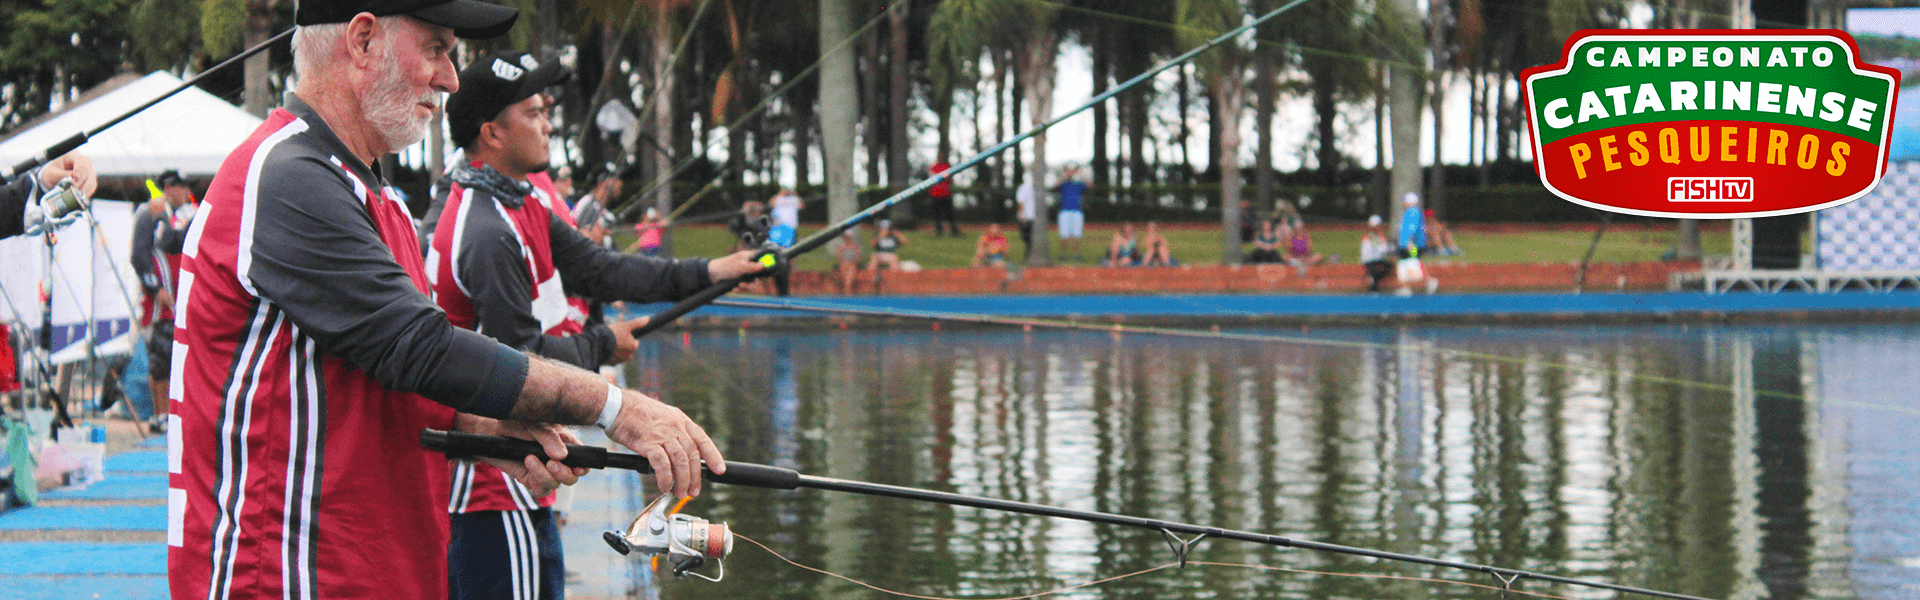 Joinville recebe a maior competição de pesca esportiva de SC